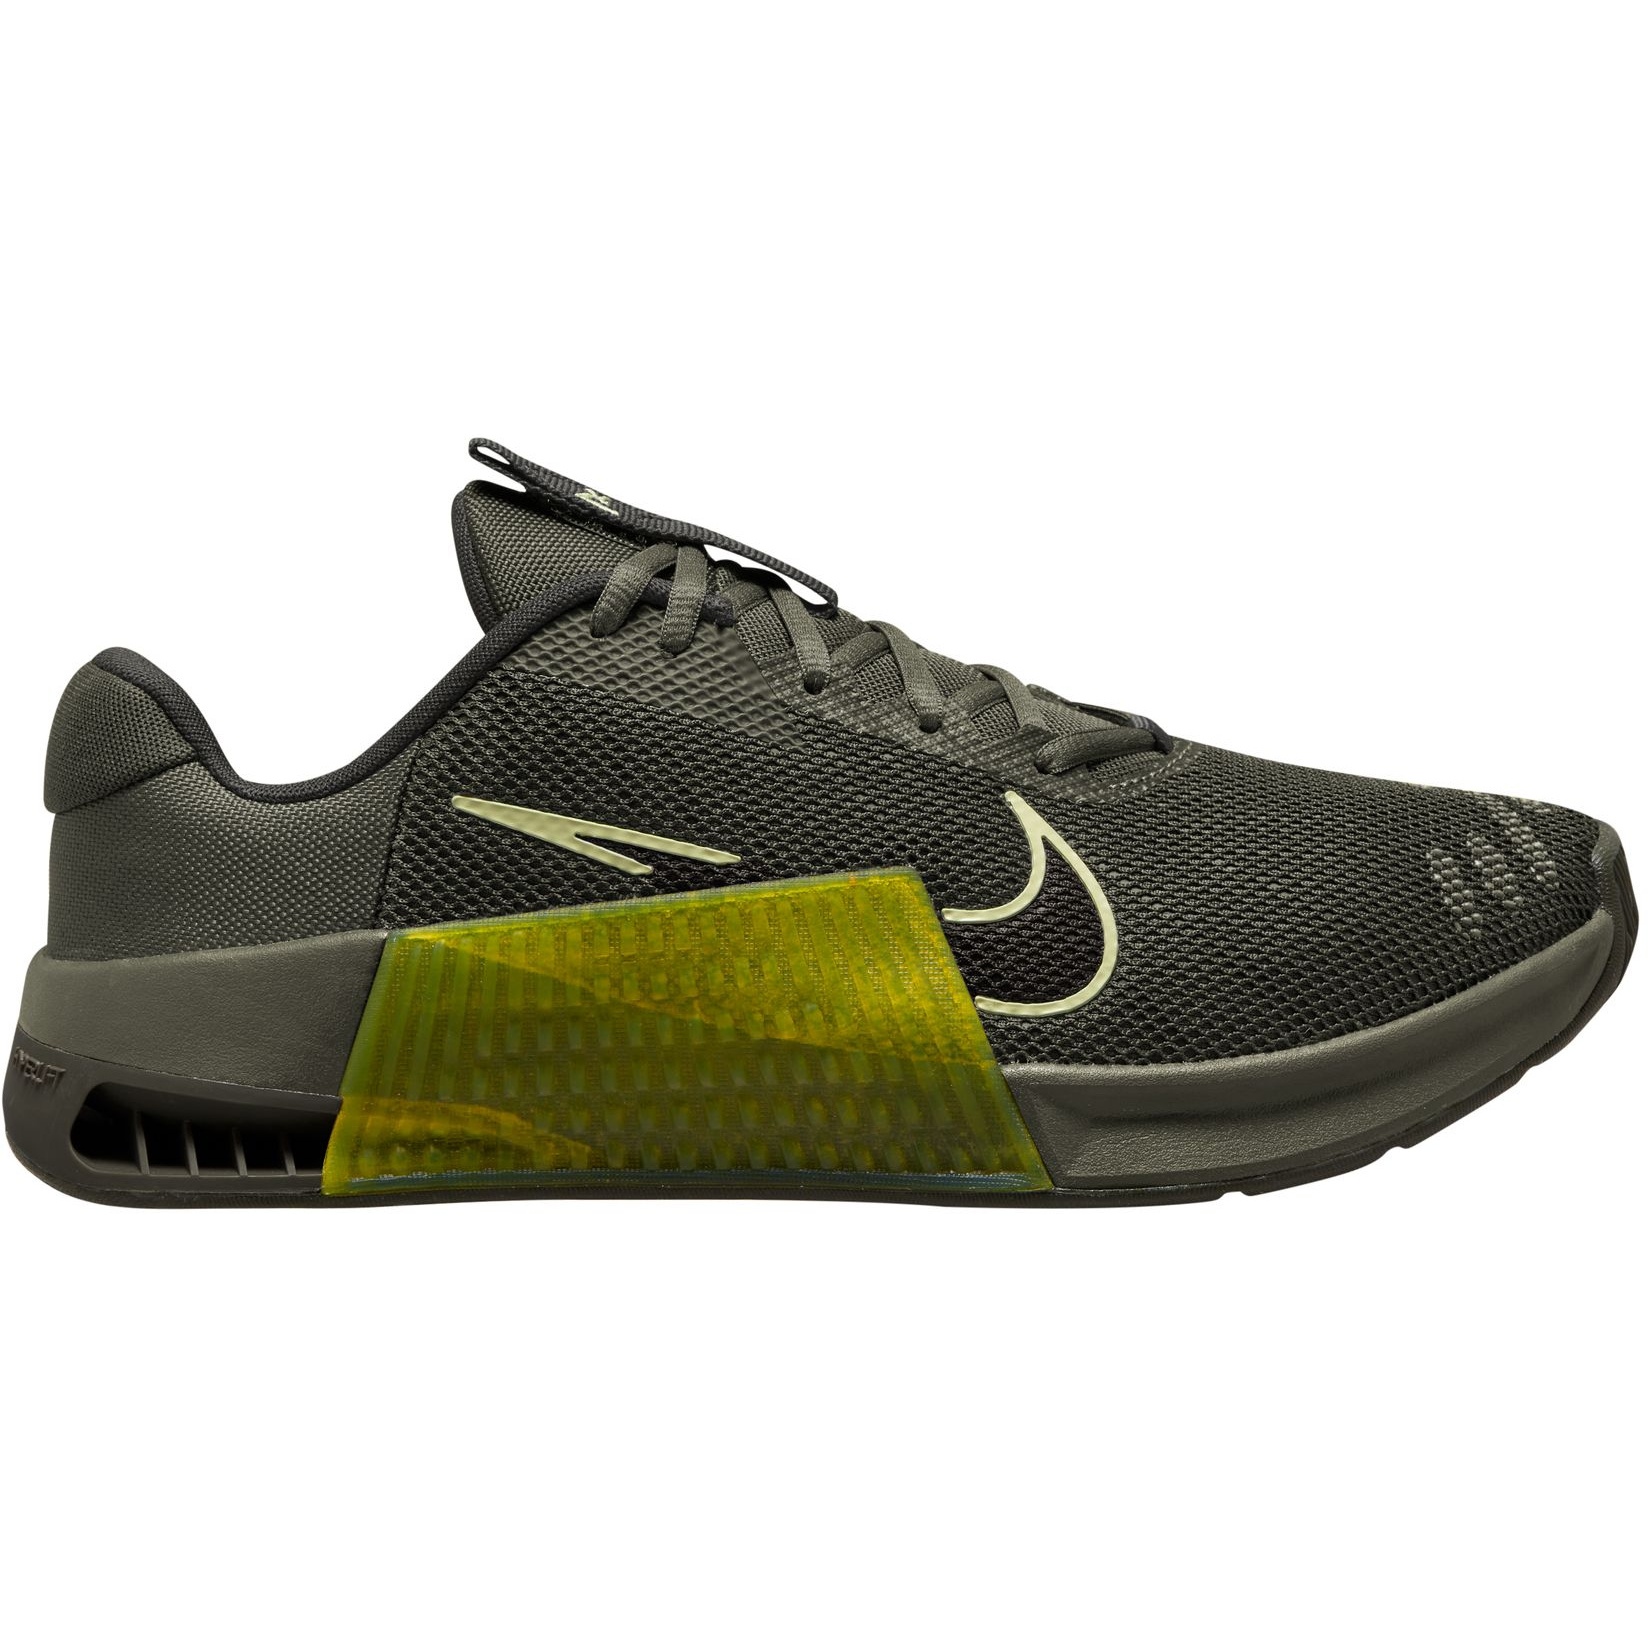 Immagine prodotto da Nike Scarpe da training Uomo - Metcon 9 - olive/sequoia-high voltage DZ2617-300